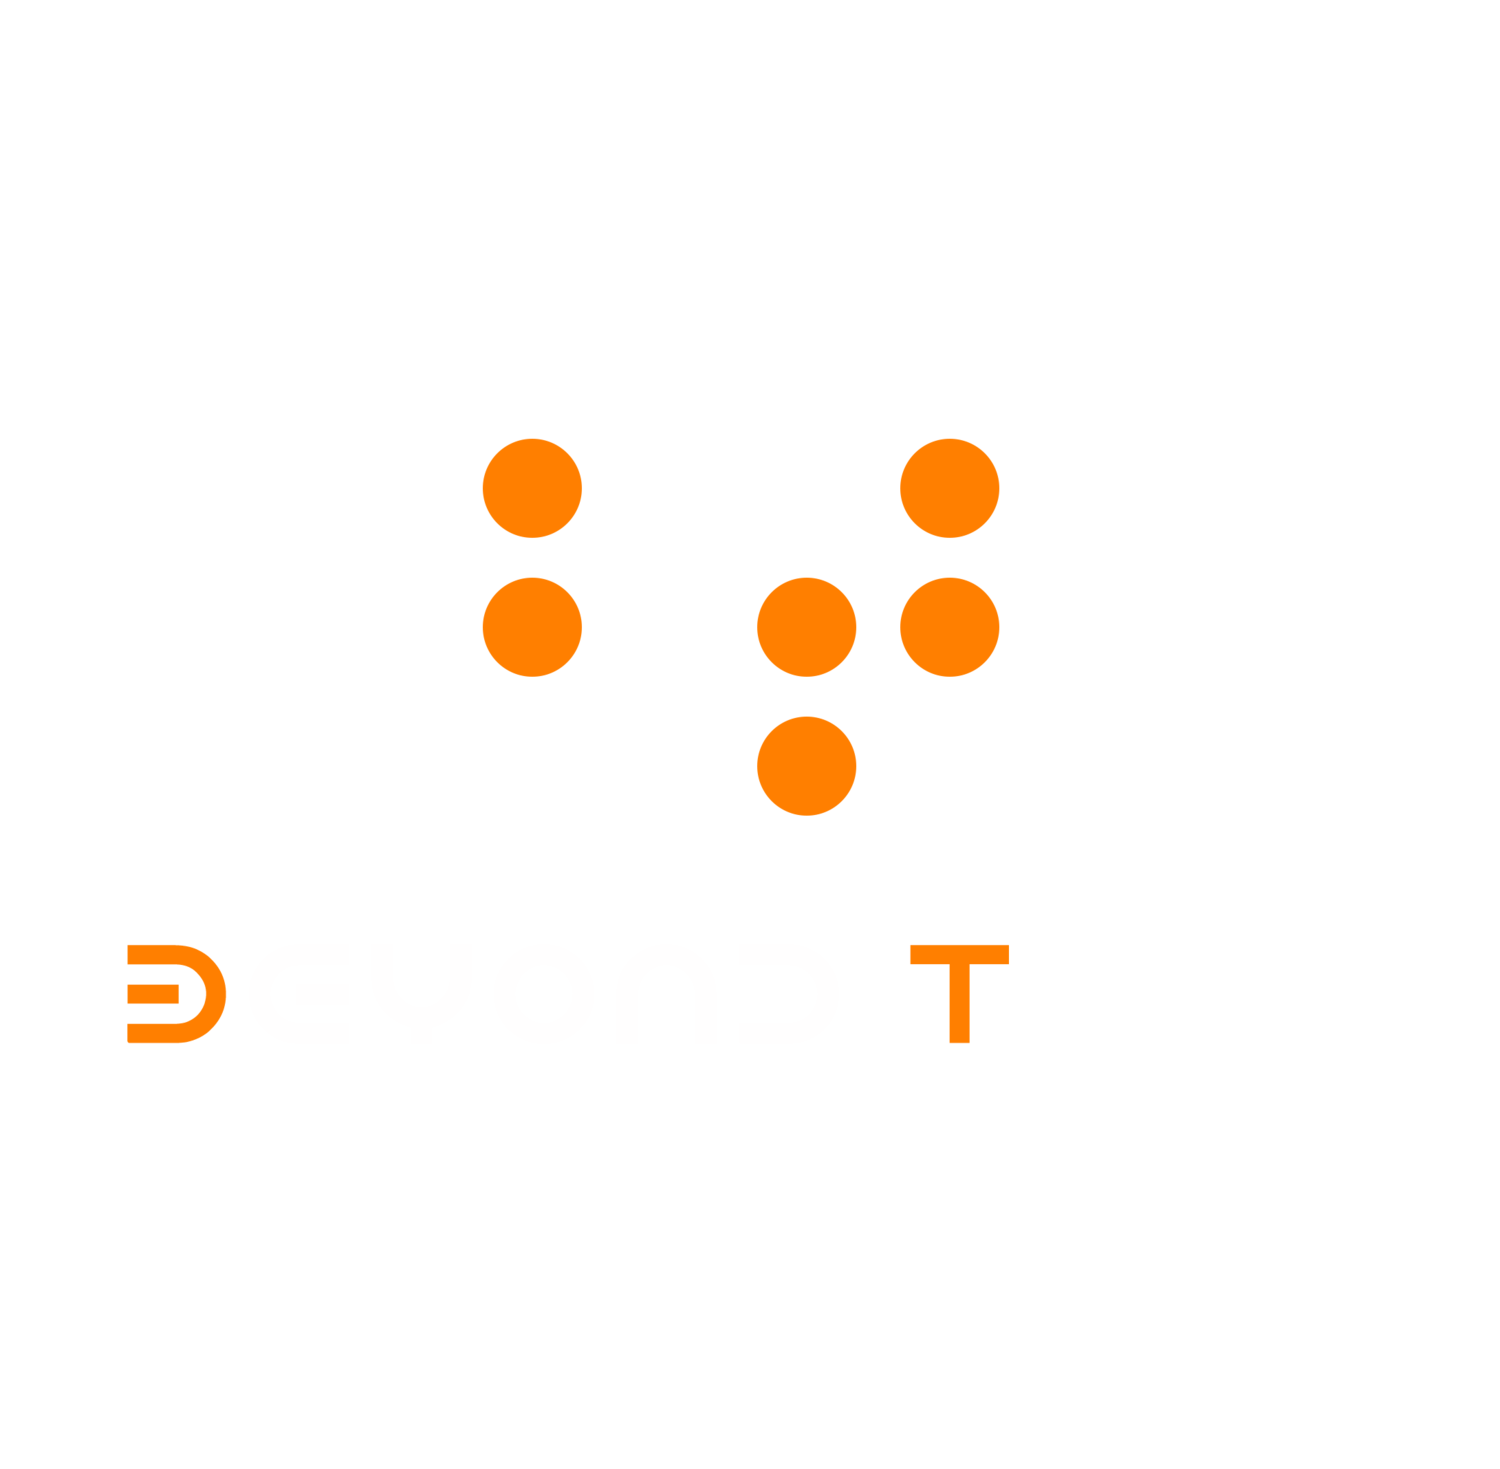 Beyond Tone